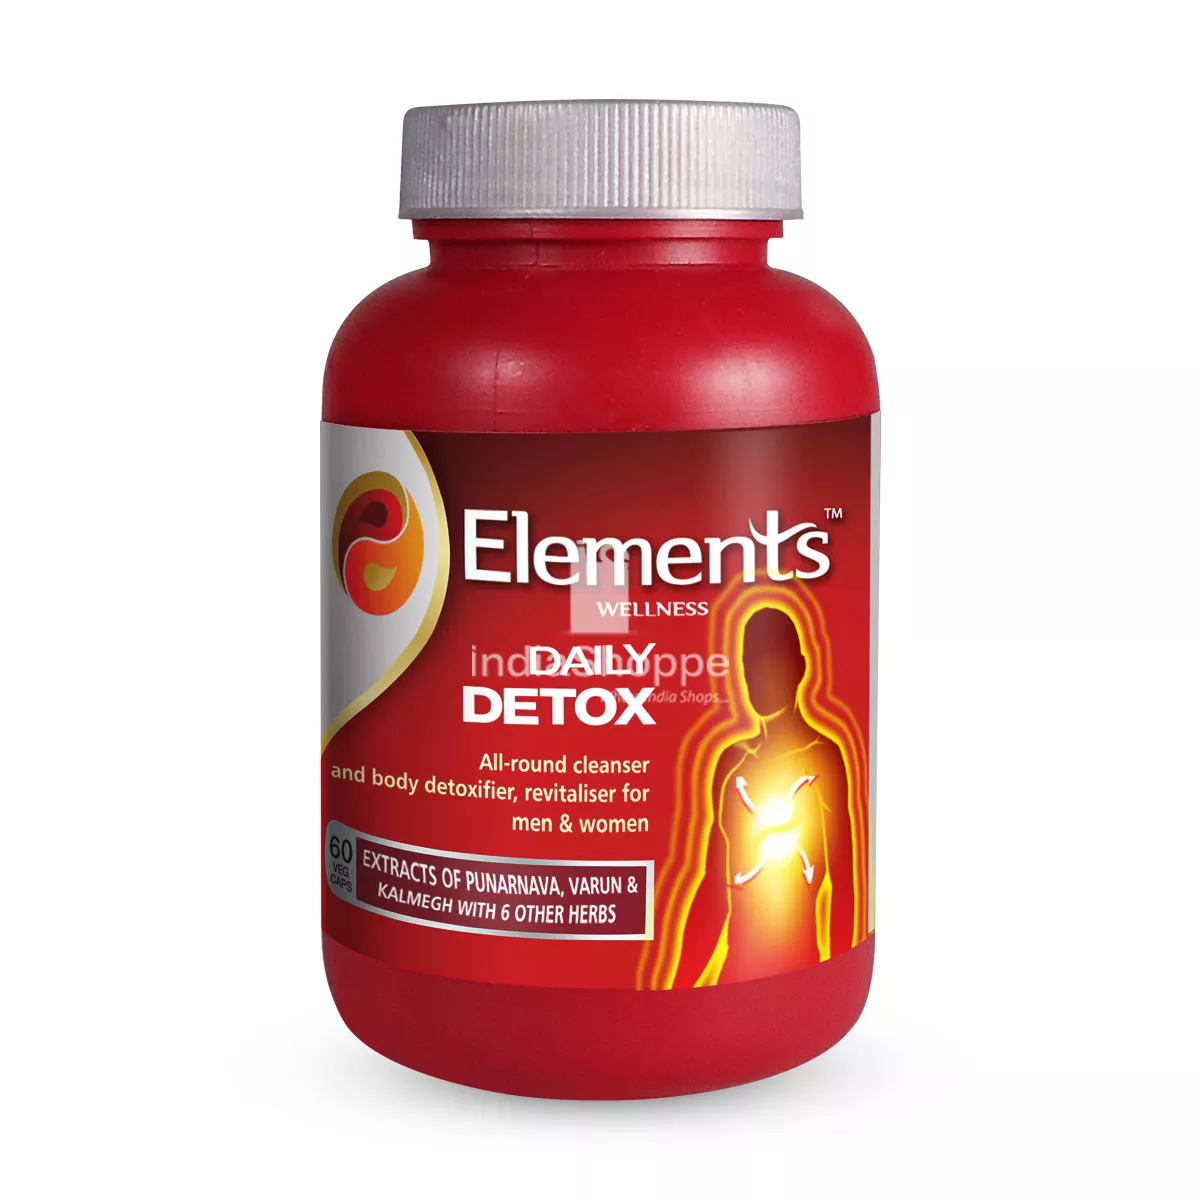 Elements Daily Detox